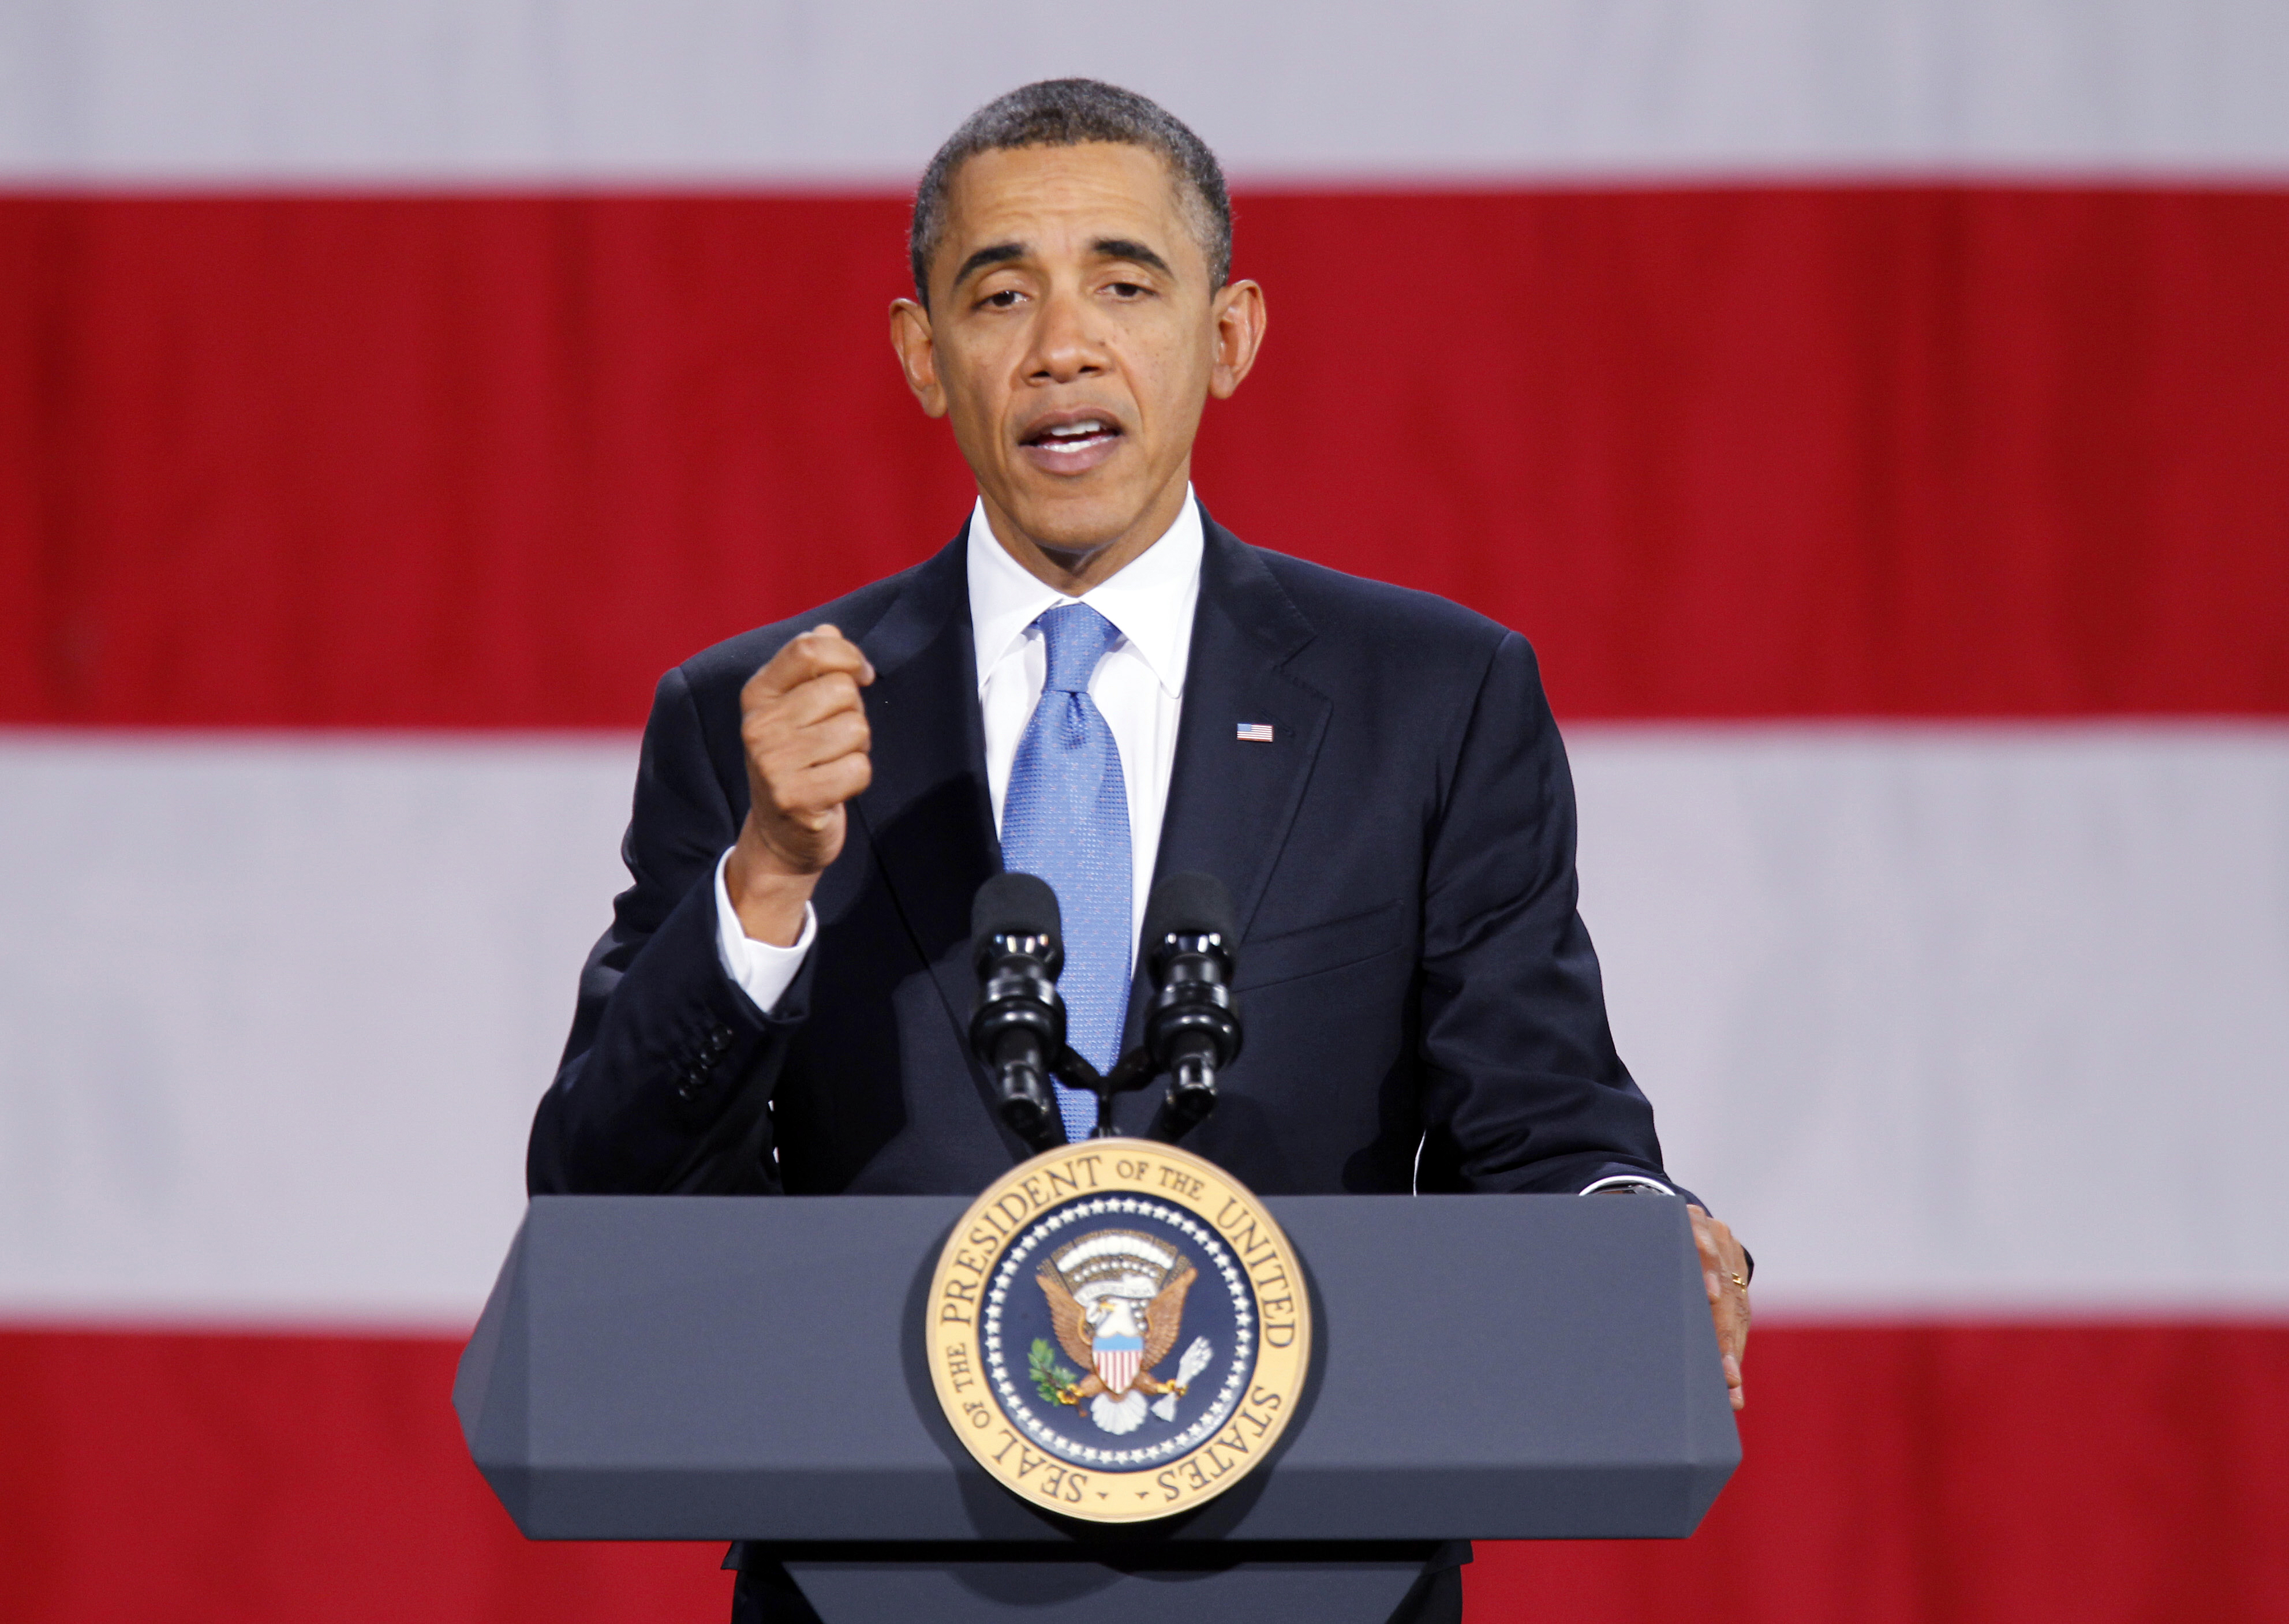 Pentagon, Nobelpriset, Barack Obama, USA, Iran, Terror, Fredspriset